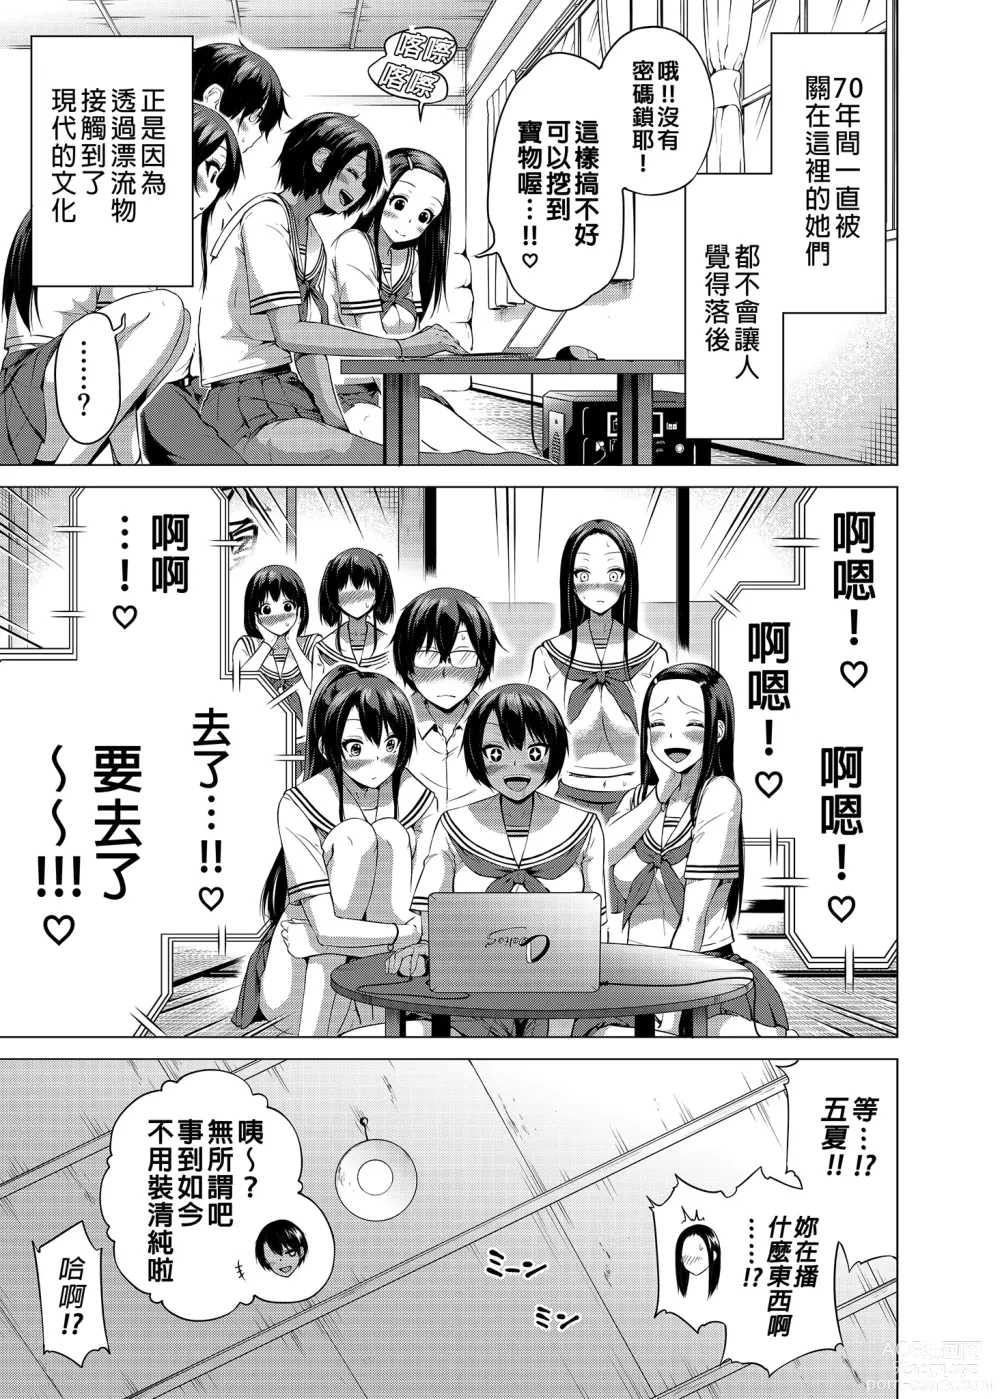 Page 6 of manga nanaka no rakuen5